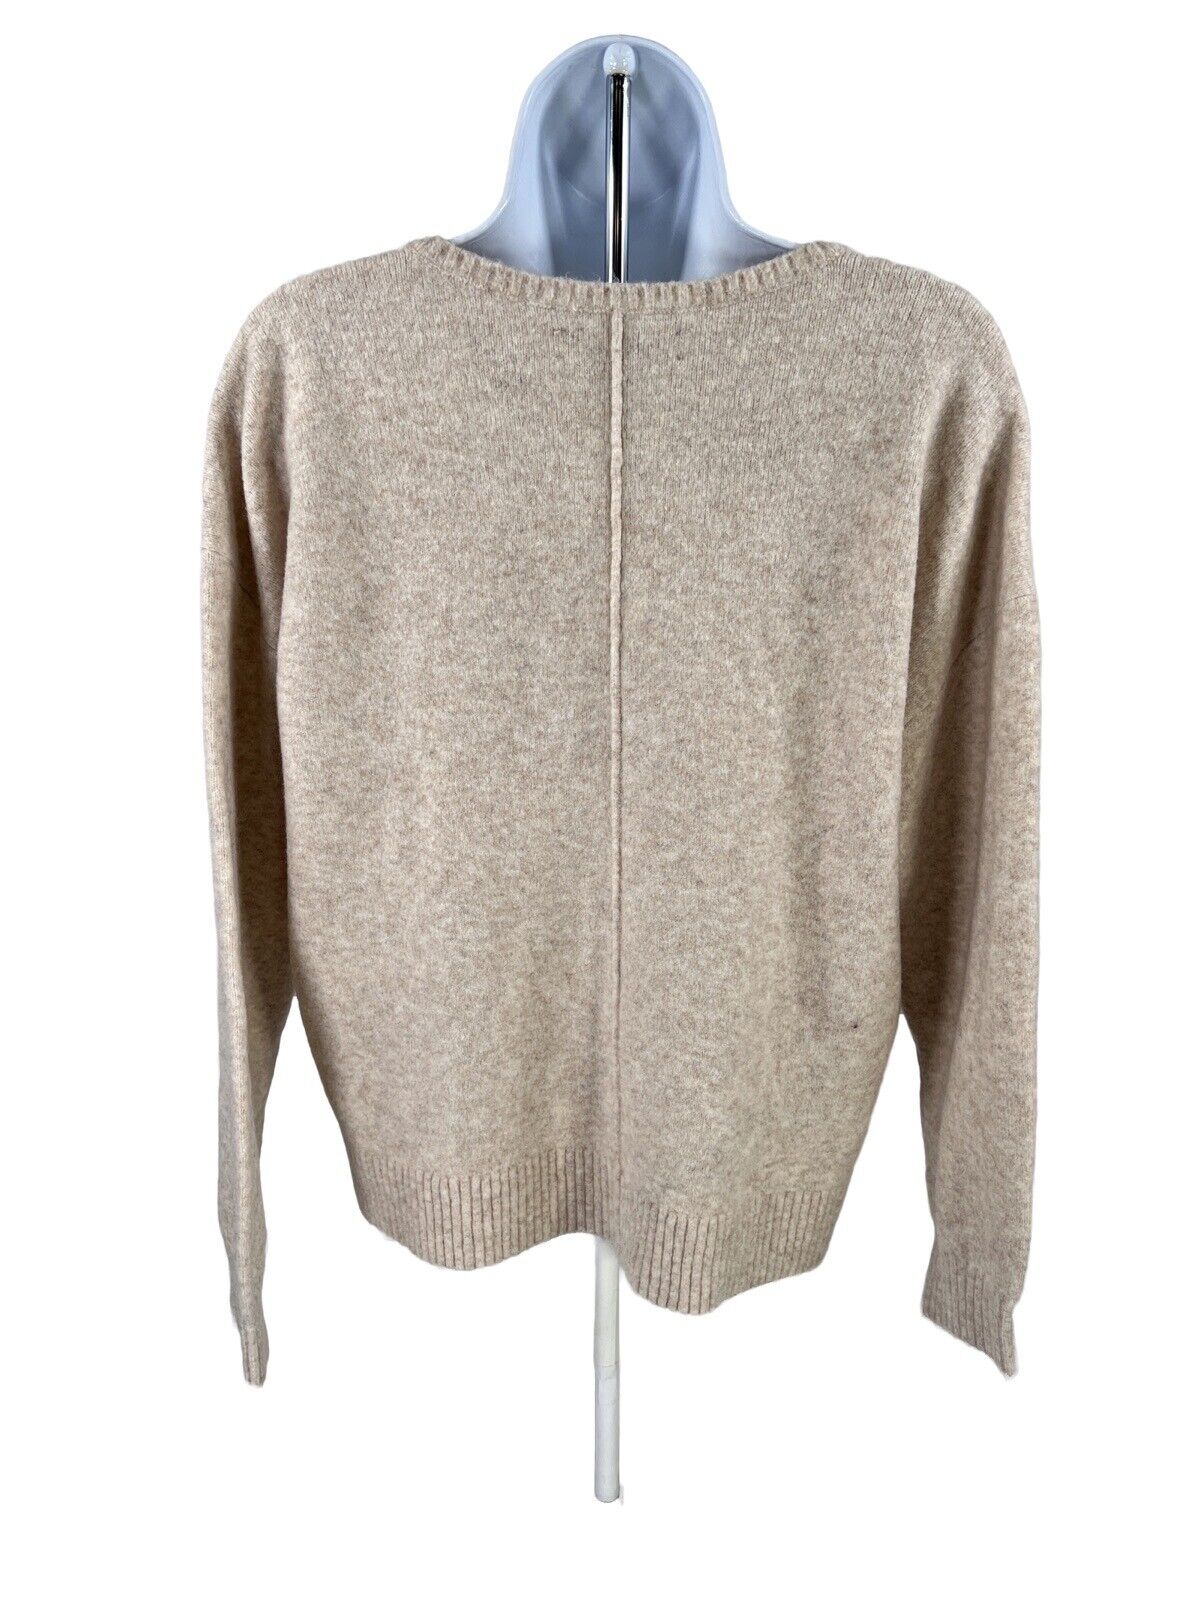 LOFT Women's Beige Wool Blend V-Neck Oversized Sweater - S